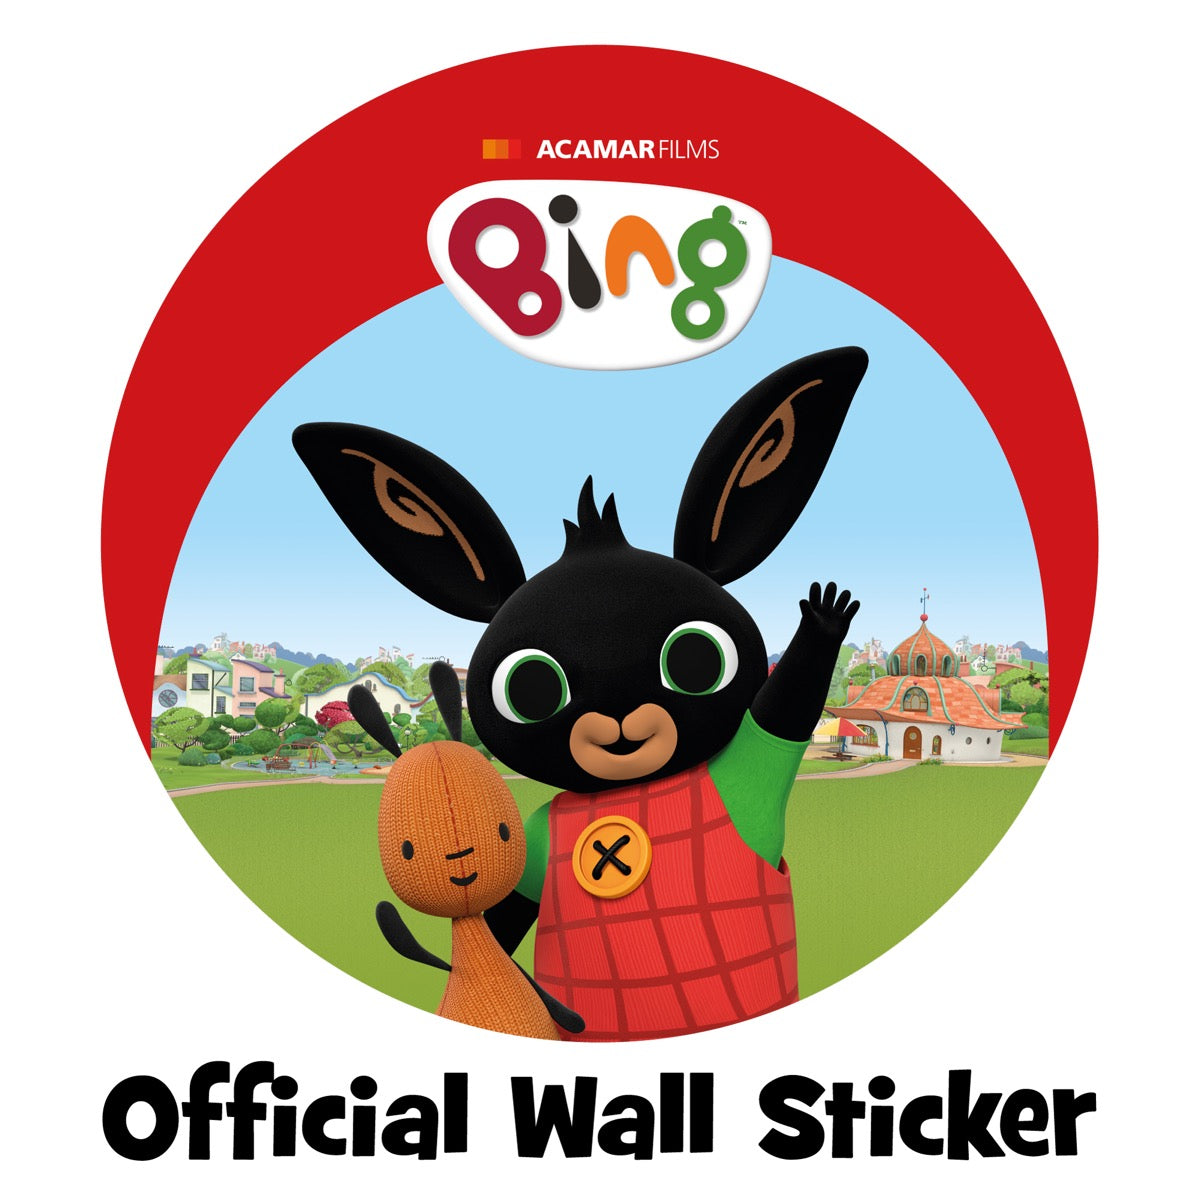 Bing Wall Sticker - Bing Waving Red Shape Wall Decal